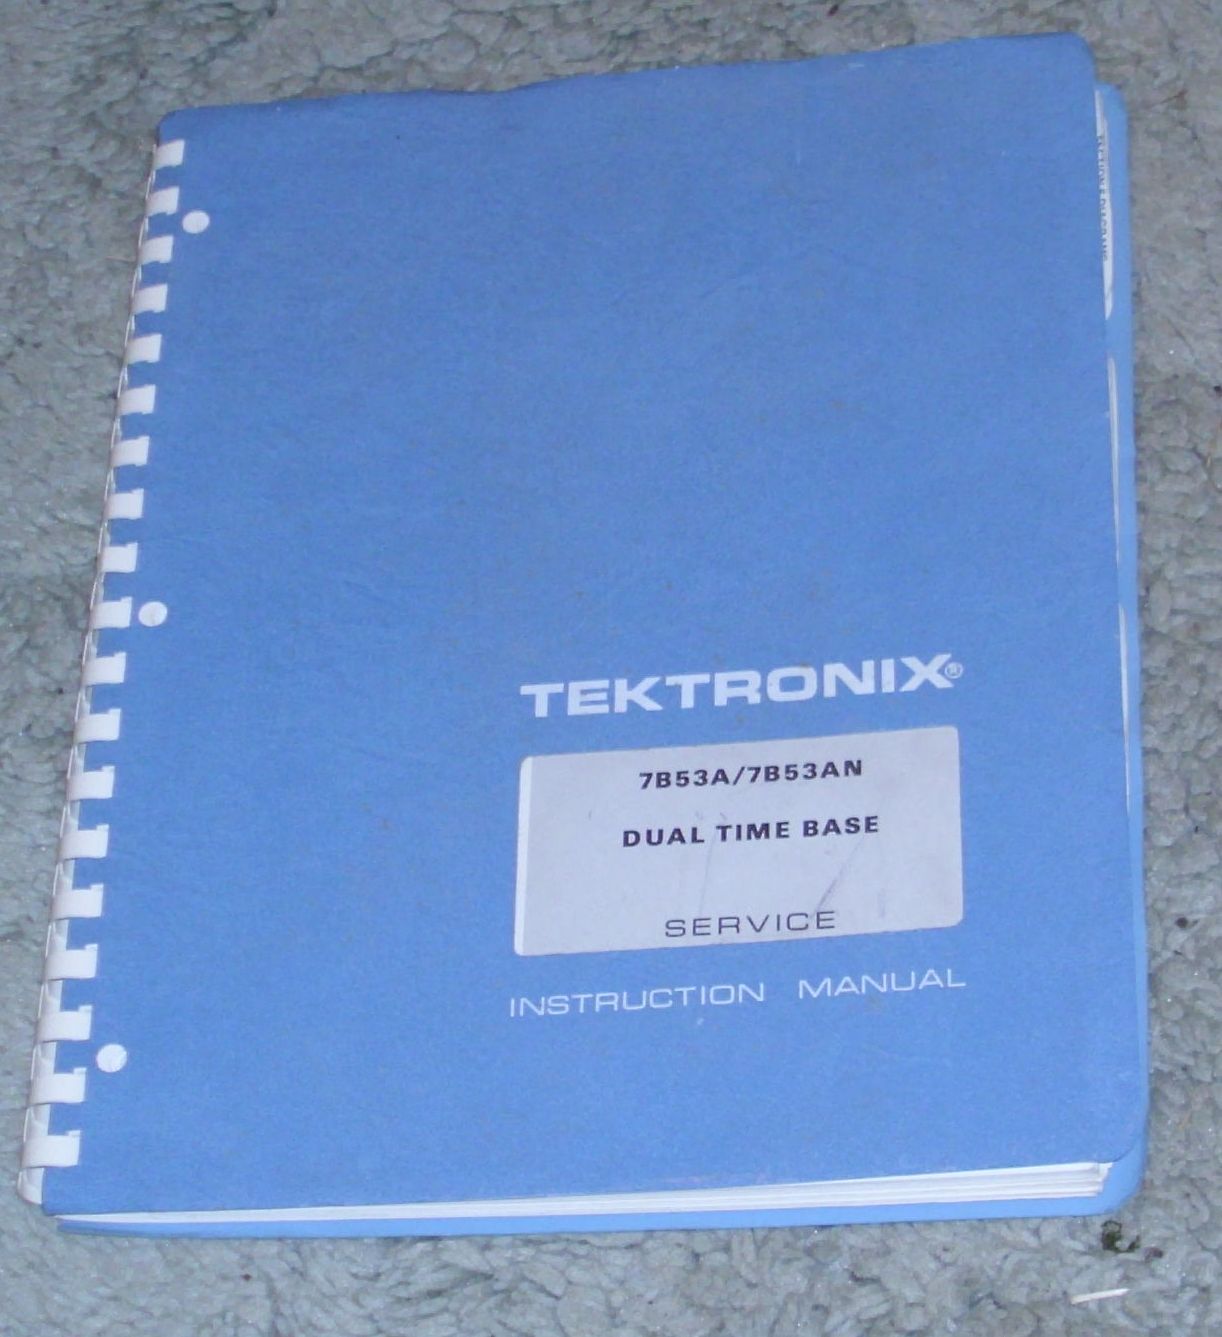 Manual 7853 Tek